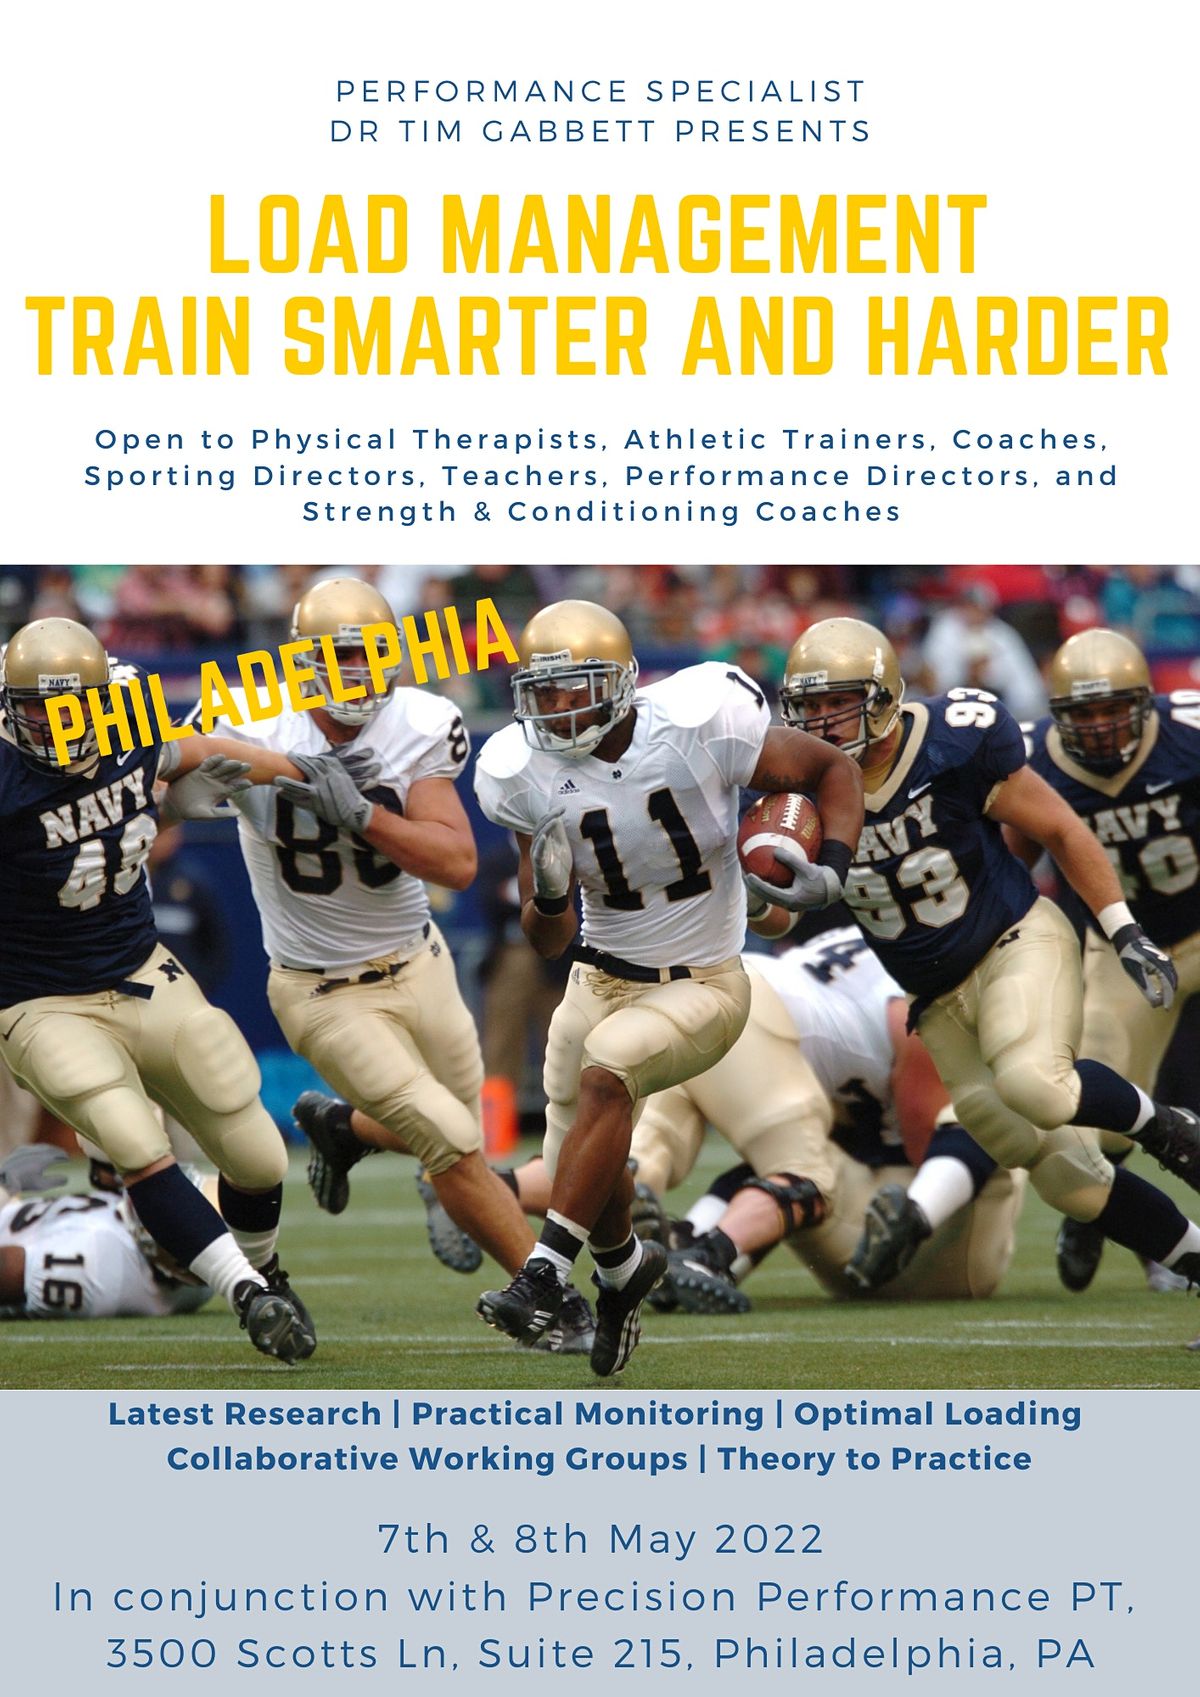 Load Management - Train Smarter and Harder (Philadelphia)